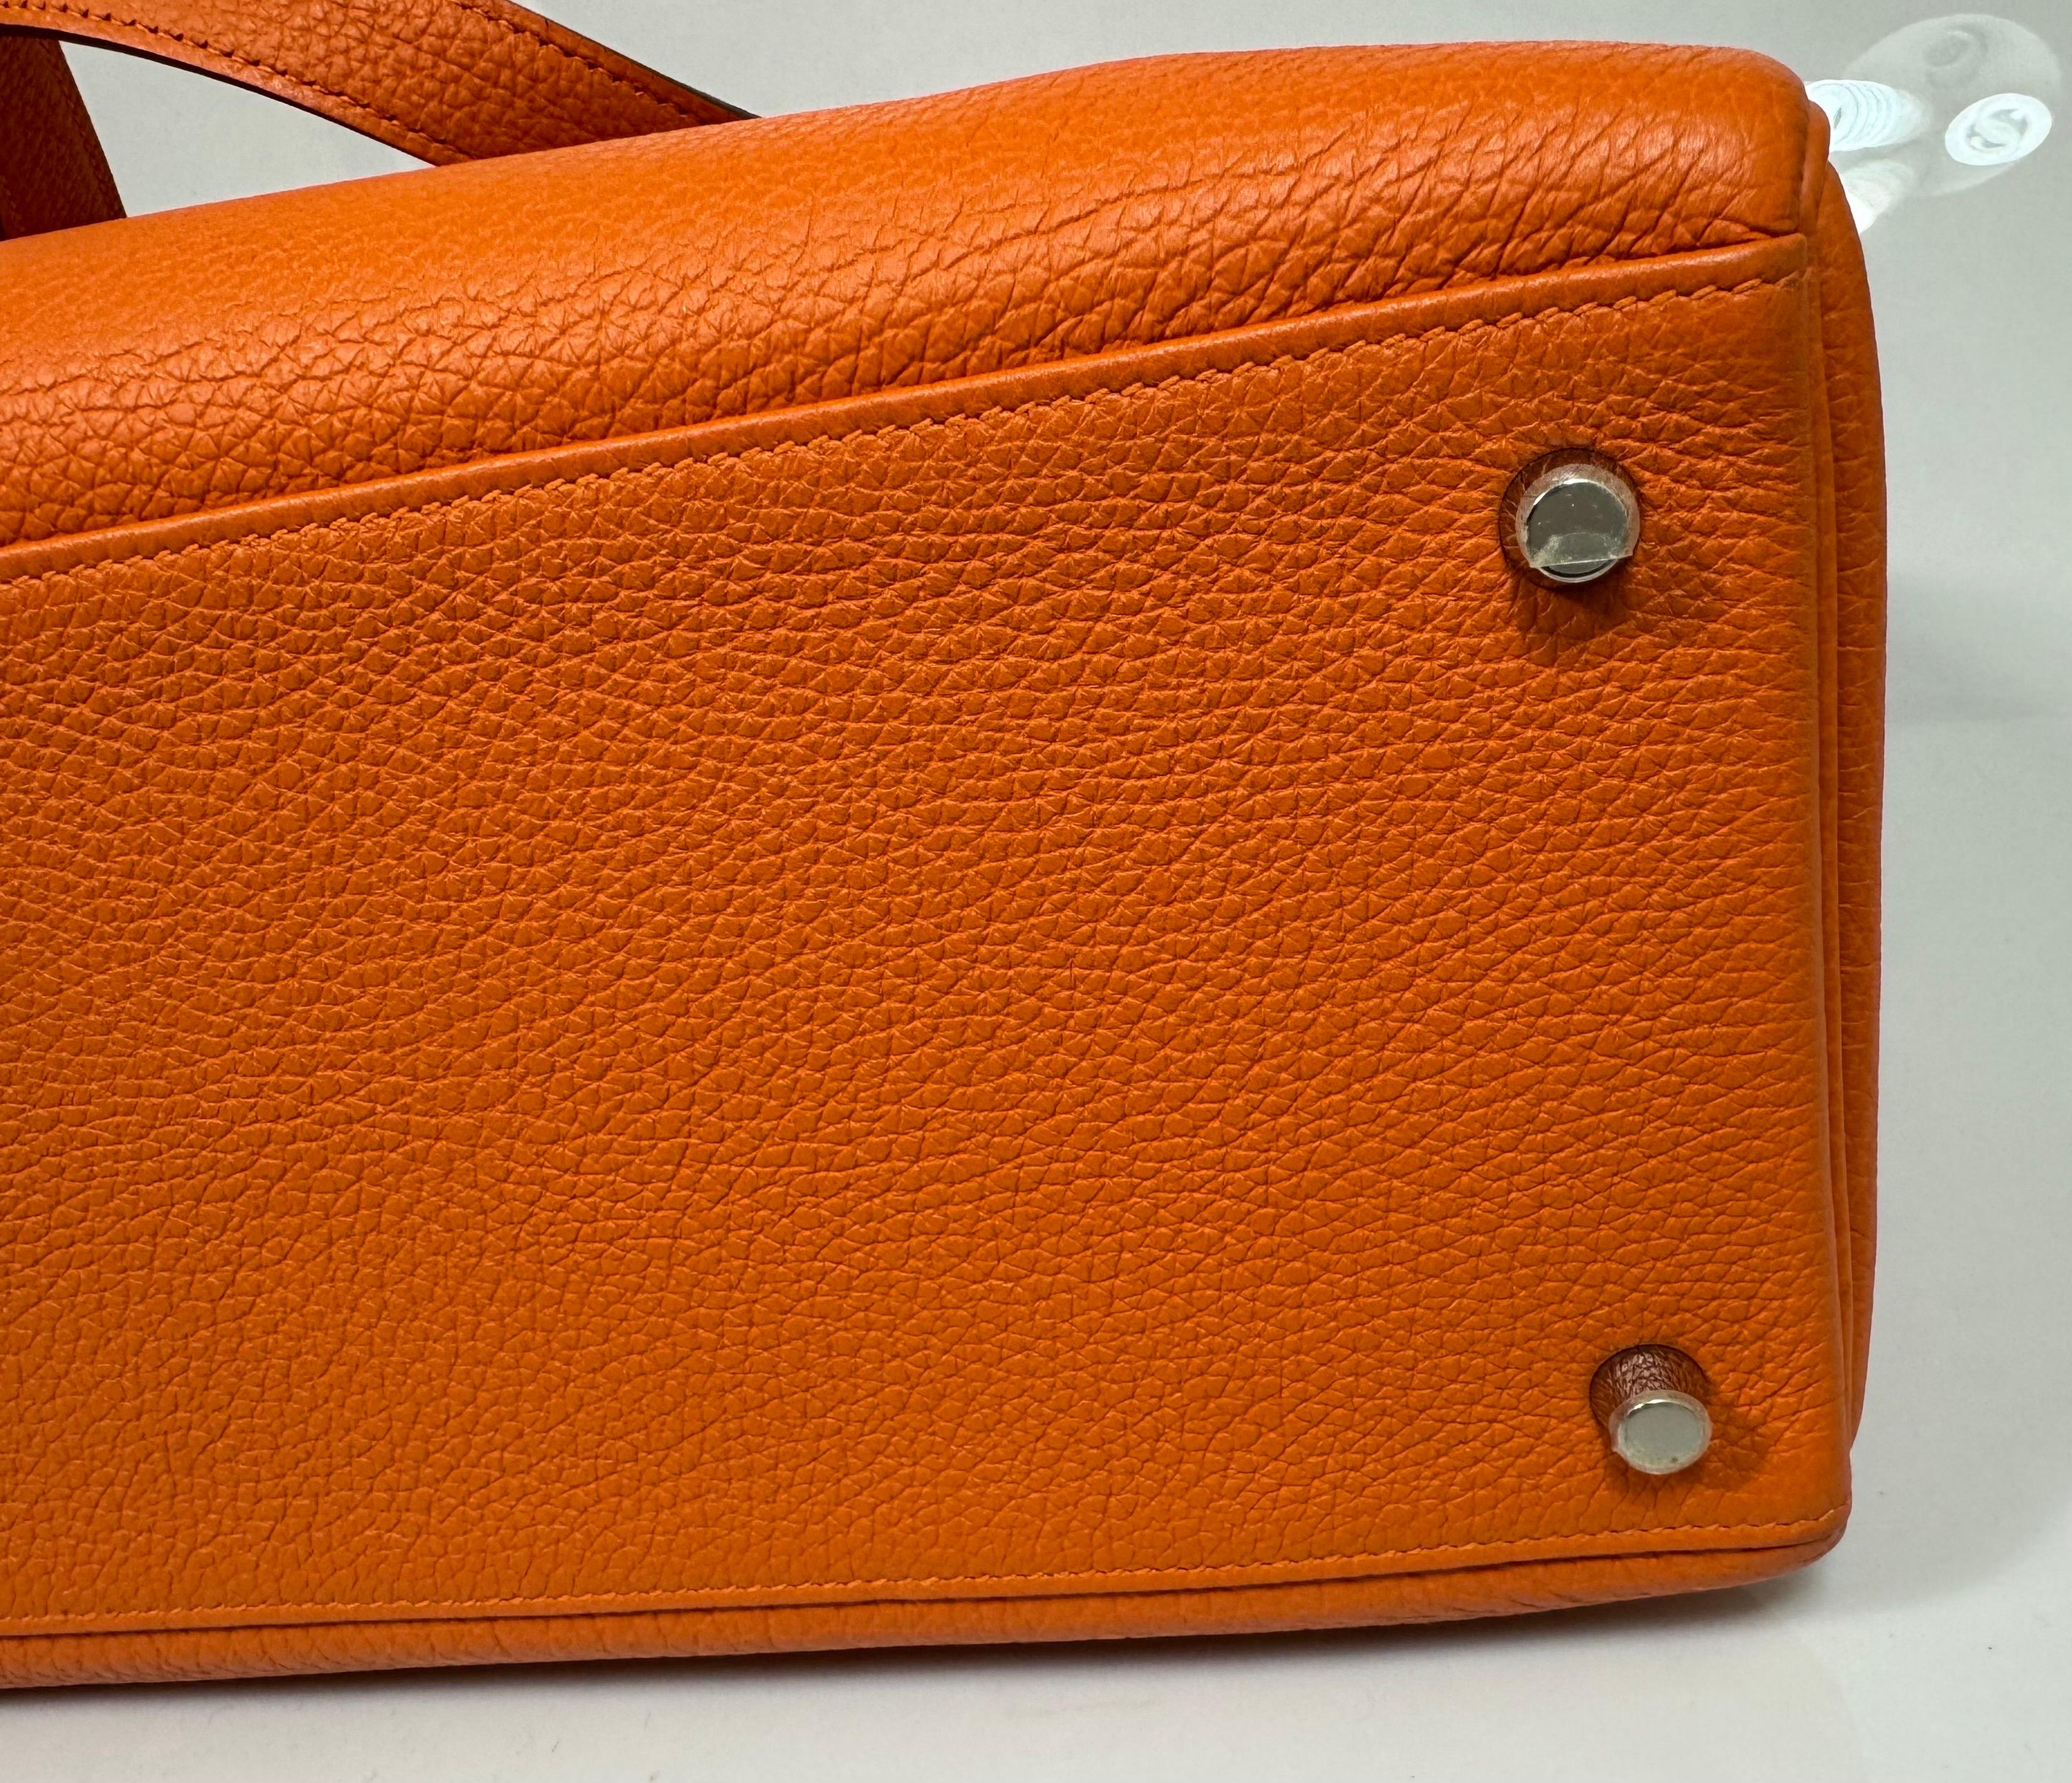 Hermes 40cm Orange Togo Kelly Retourne-2011-SHW For Sale 9